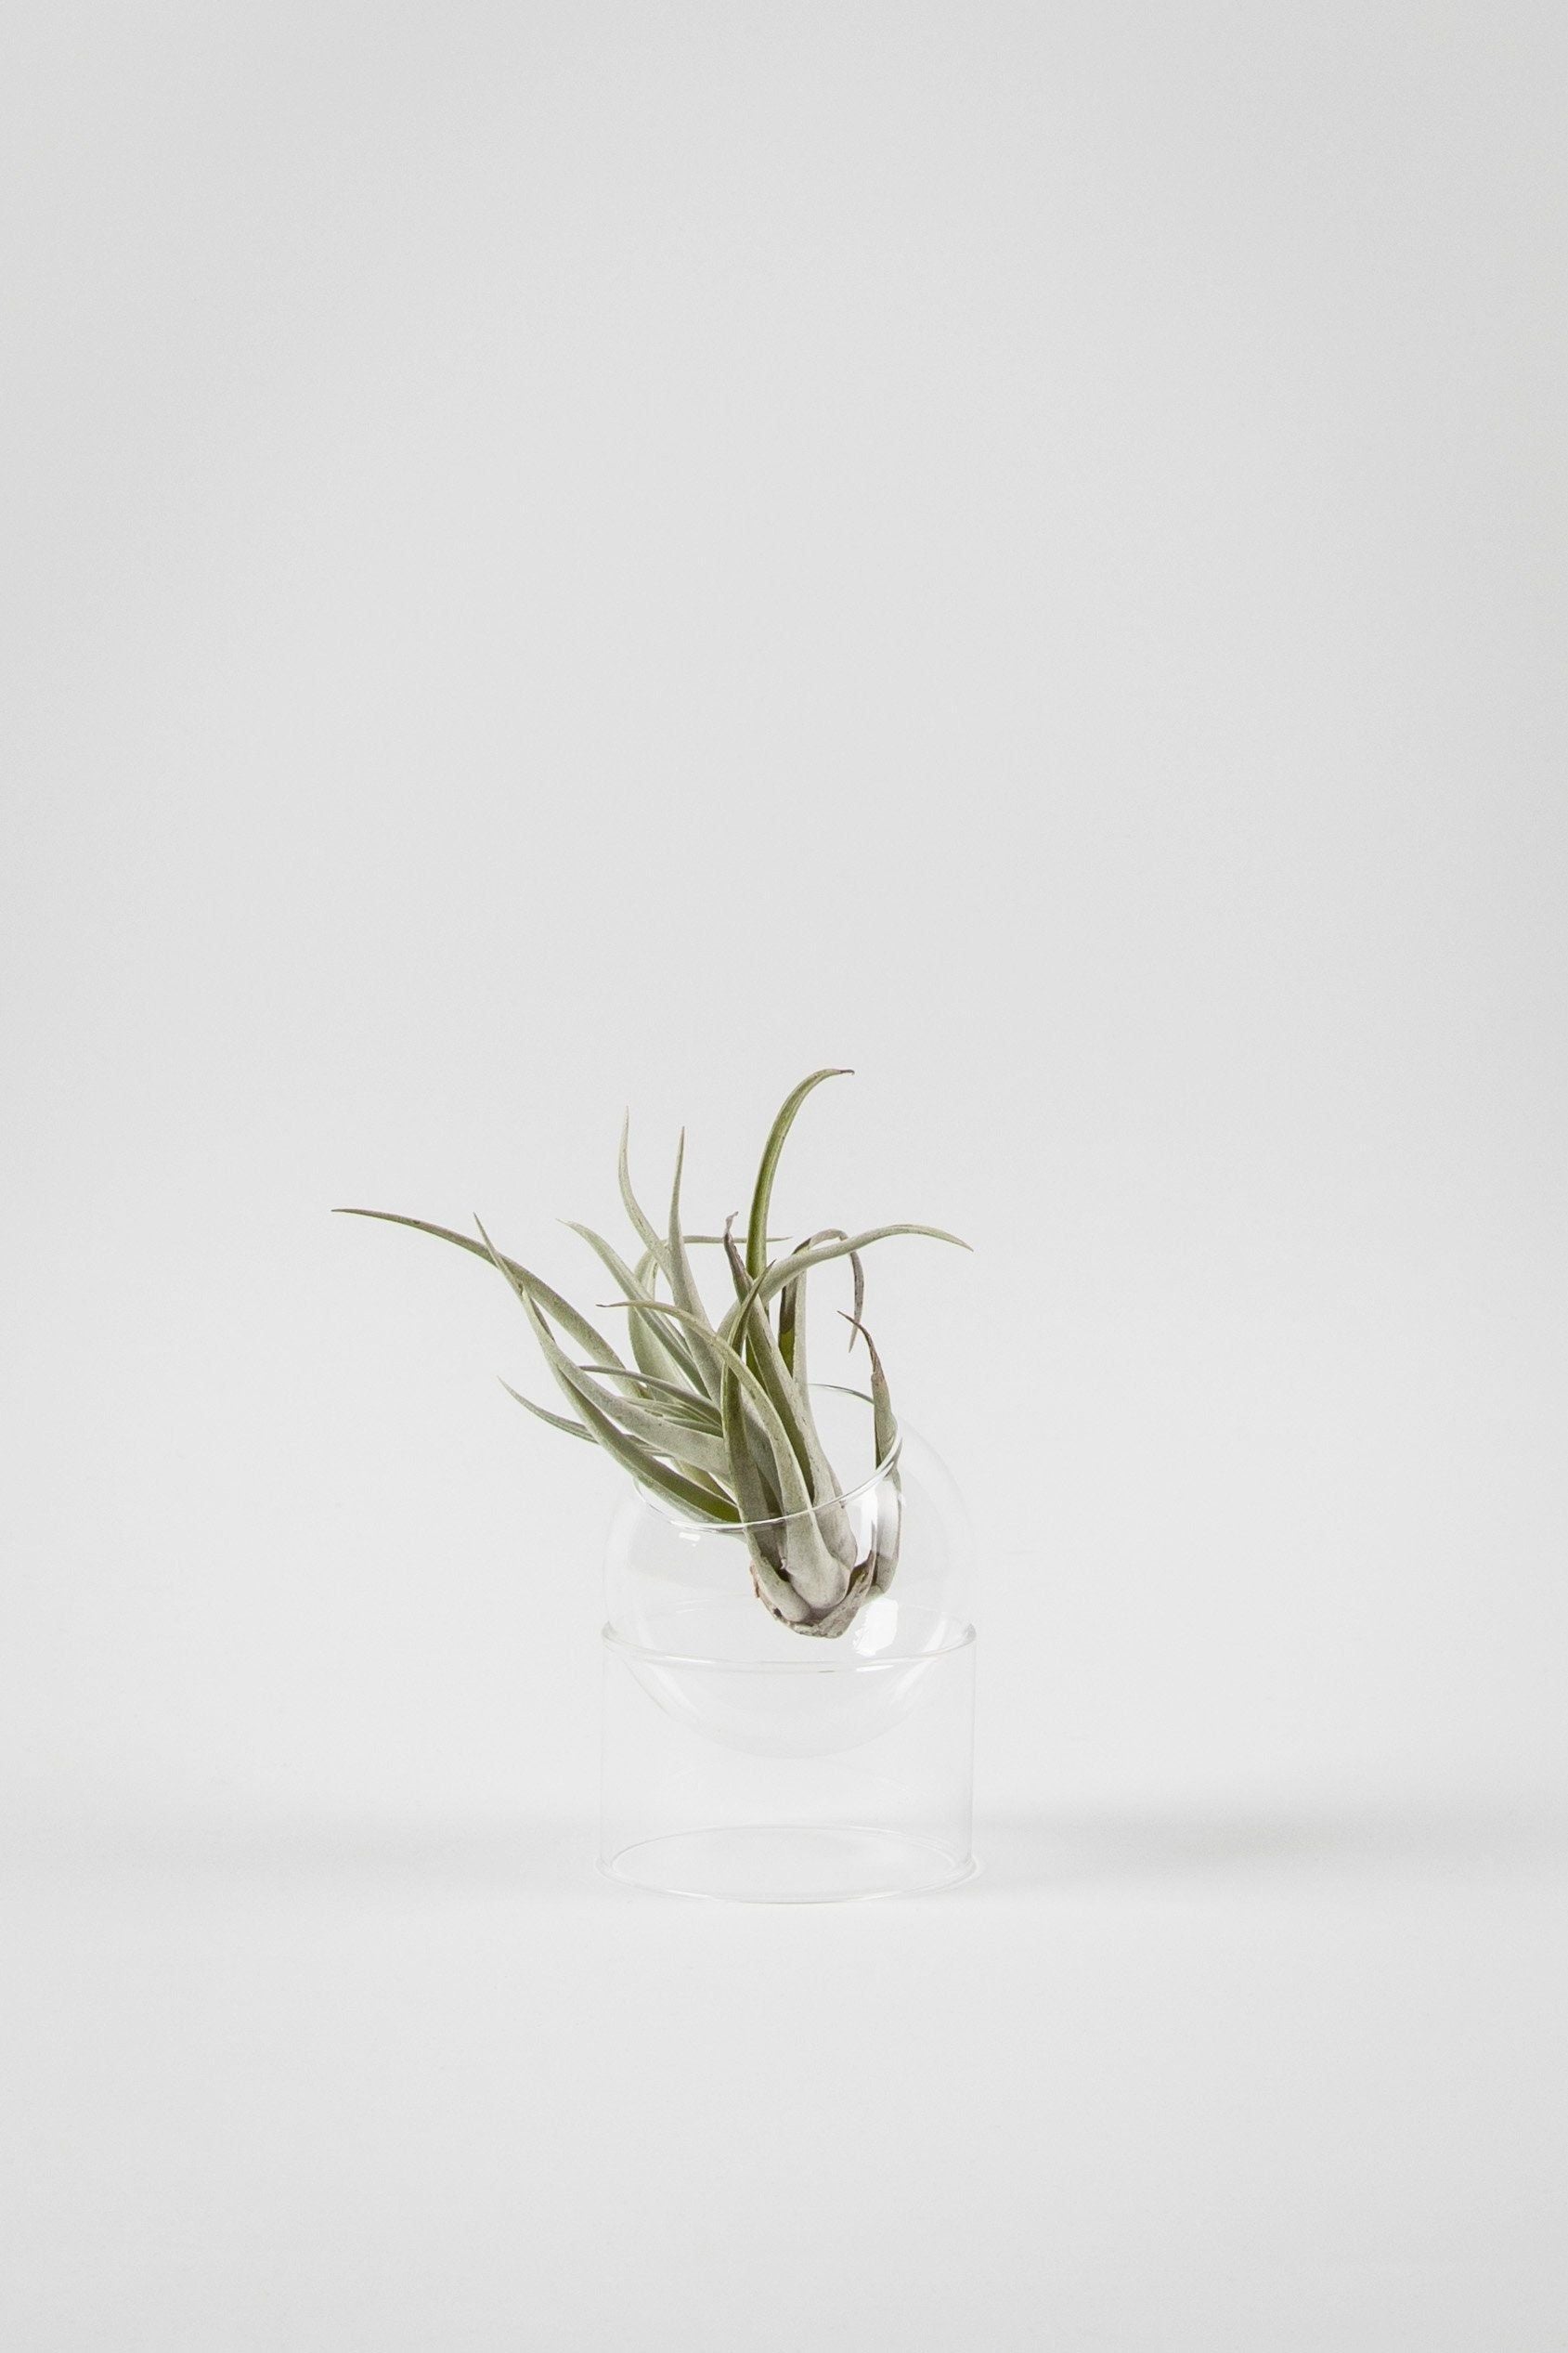 Studio sur le vase à bulles de plantes debout, transparent